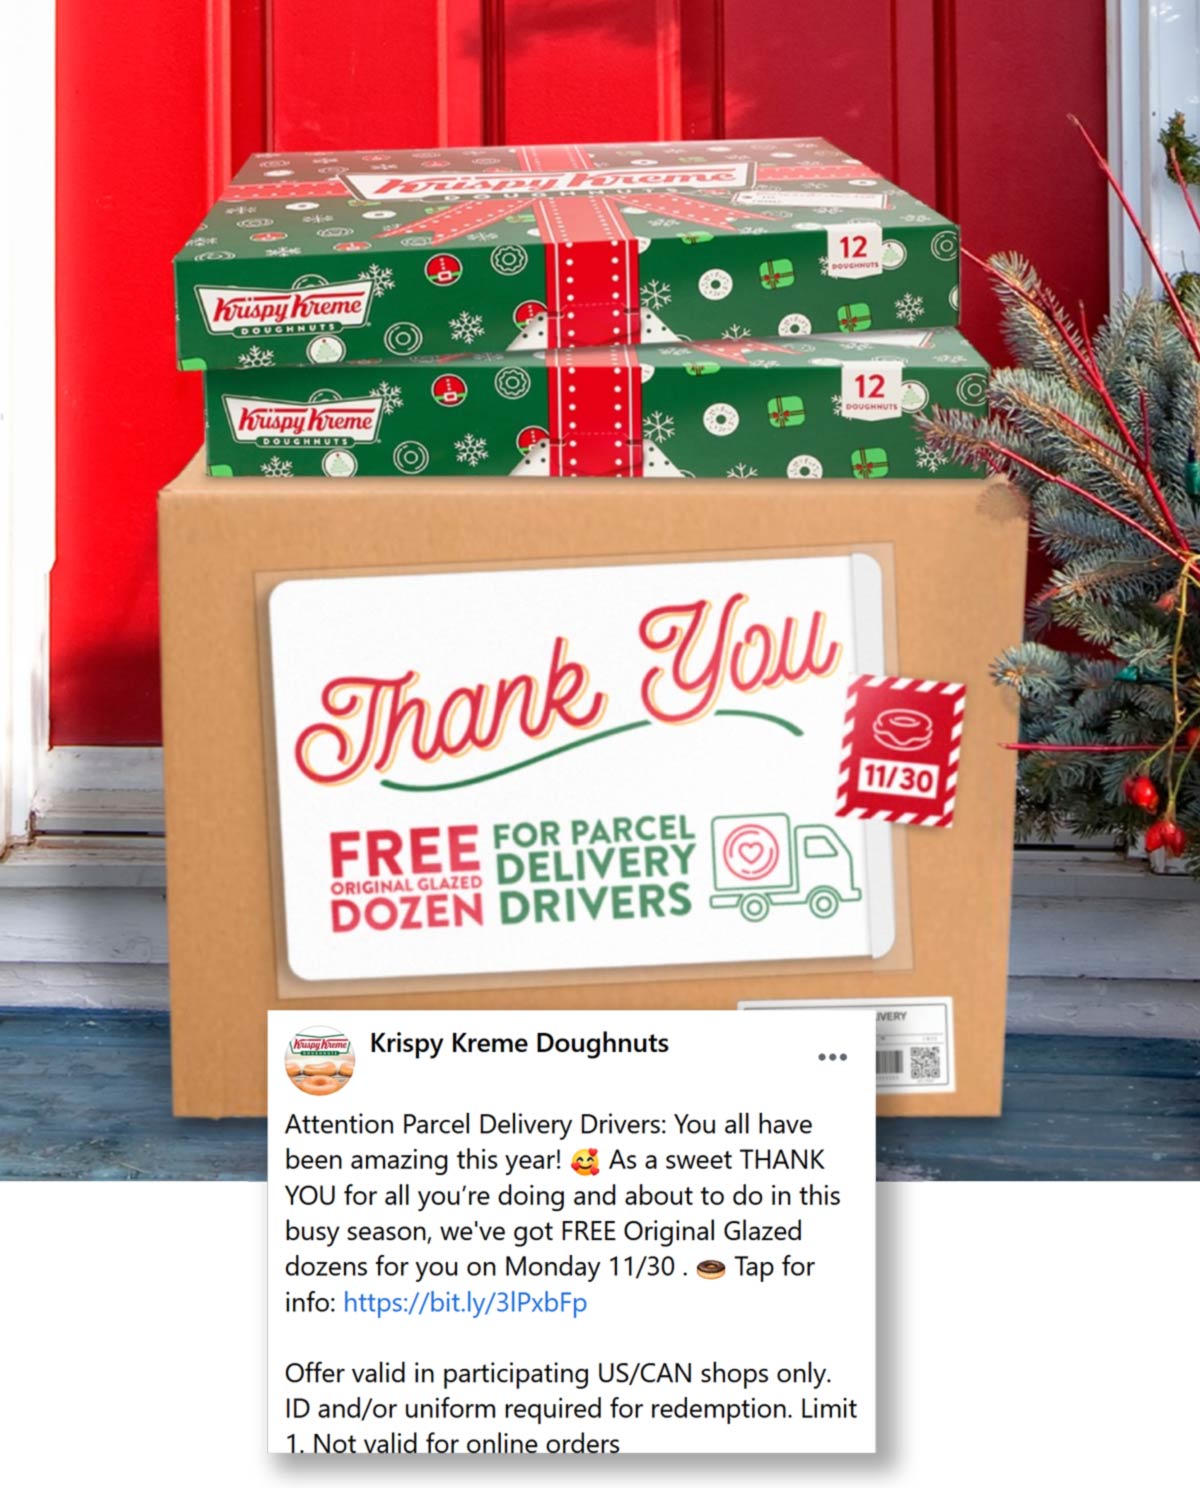 Krispy Kreme restaurants Coupon  Parcel delivery drivers enjoy a free dozen donuts Monday at Krispy Kreme doughnuts #krispykreme 